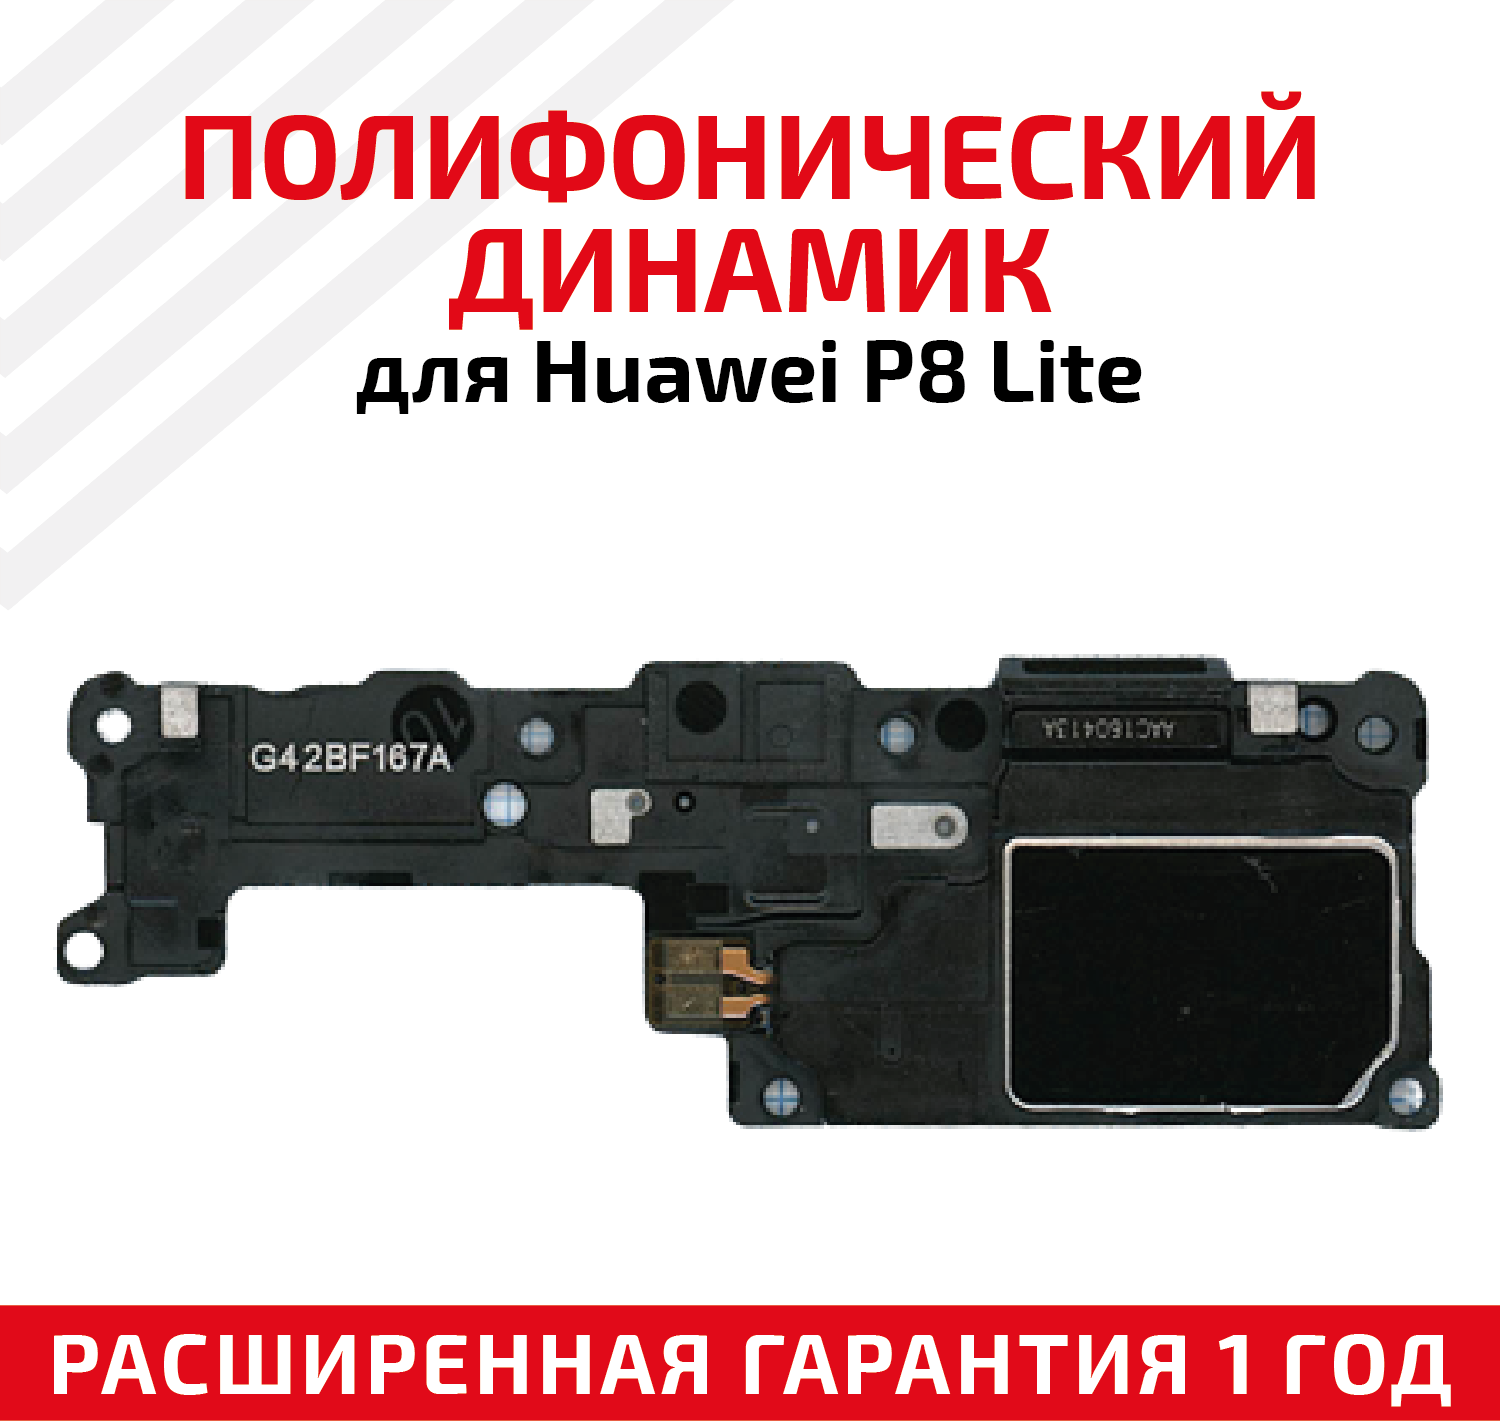 Полифонический динамик (Buzzer бузер звонок) для мобильного телефона (смартфона) Huawei P8 Lite